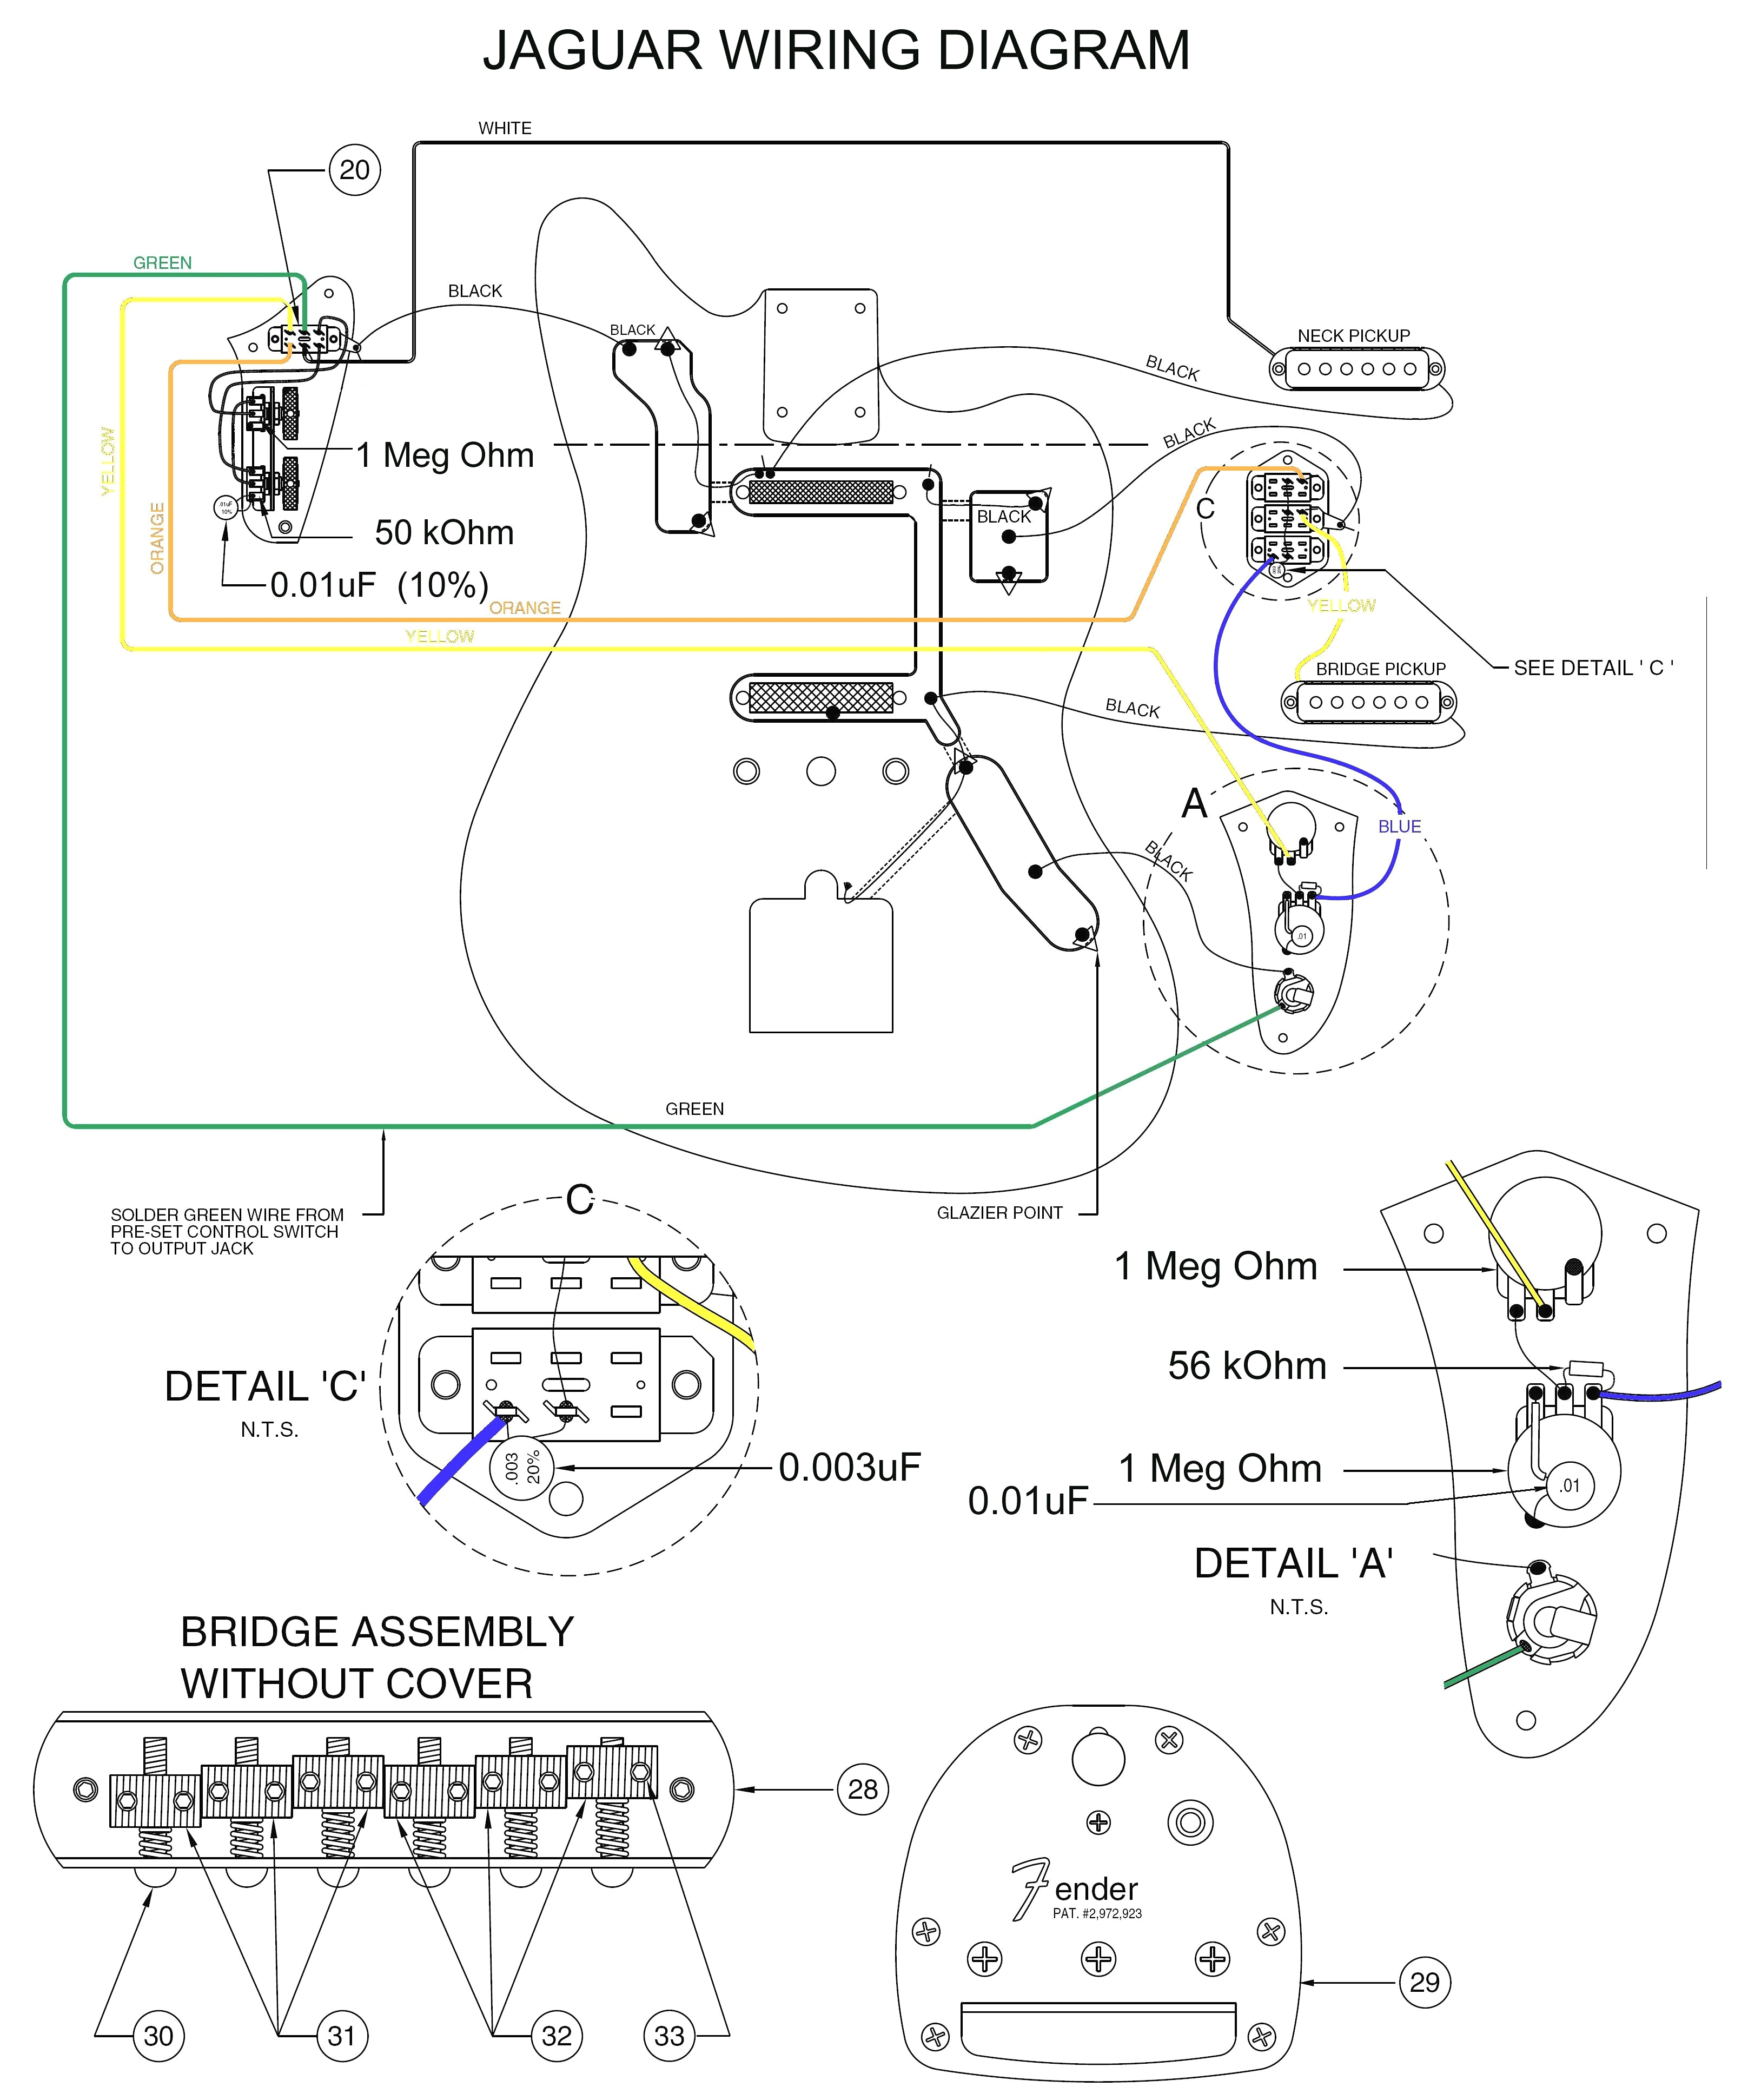 jazz b wiring schematic database wiring diagram jazz b wiring database wiring diagram jazz b wiring